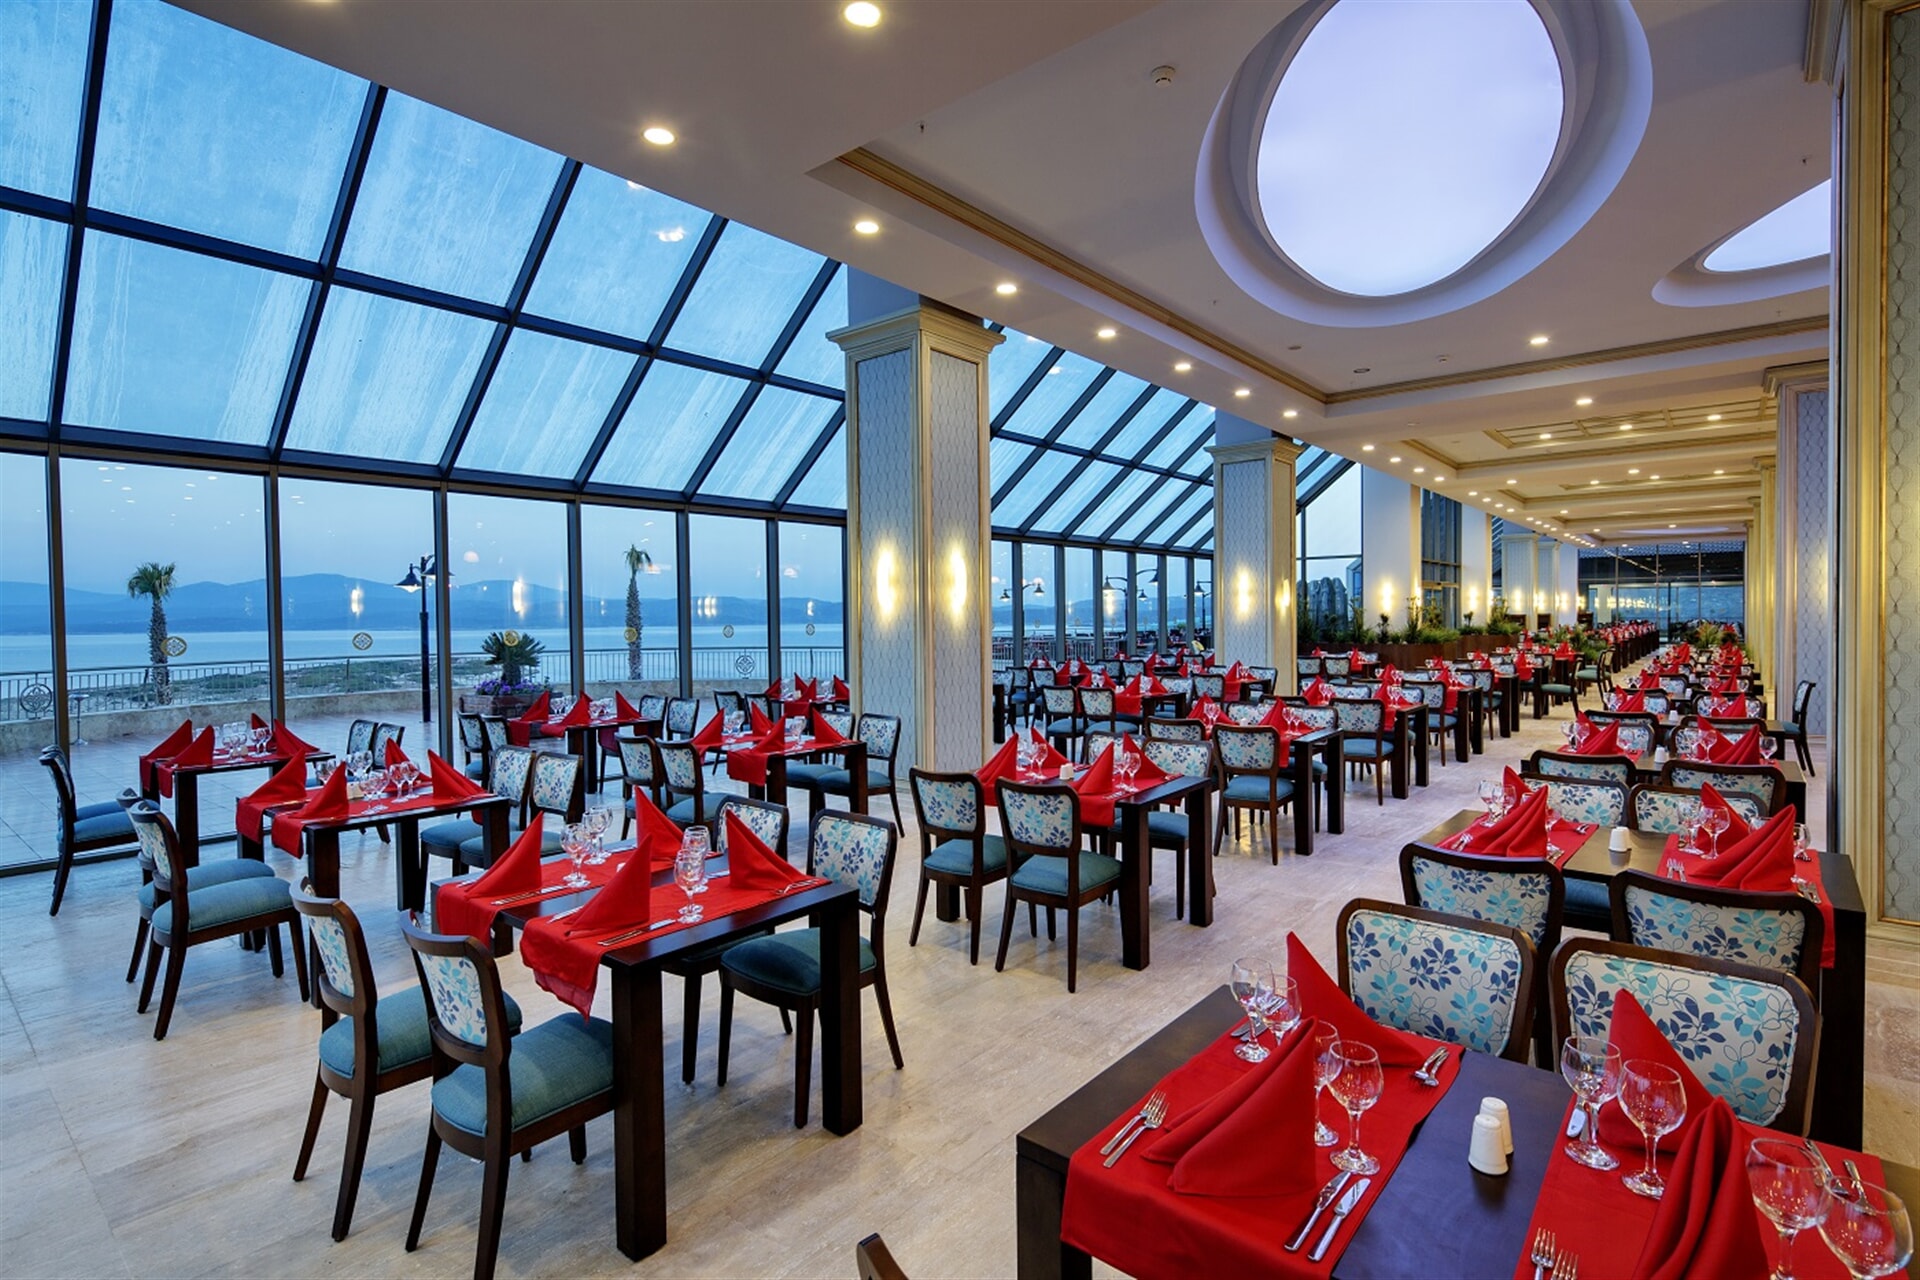 Главный ресторан предлагает различные блюда турецкой и мировой кухни в концепции шведского стола ввиде завтрака, обеда, ужина и ночного ужина.